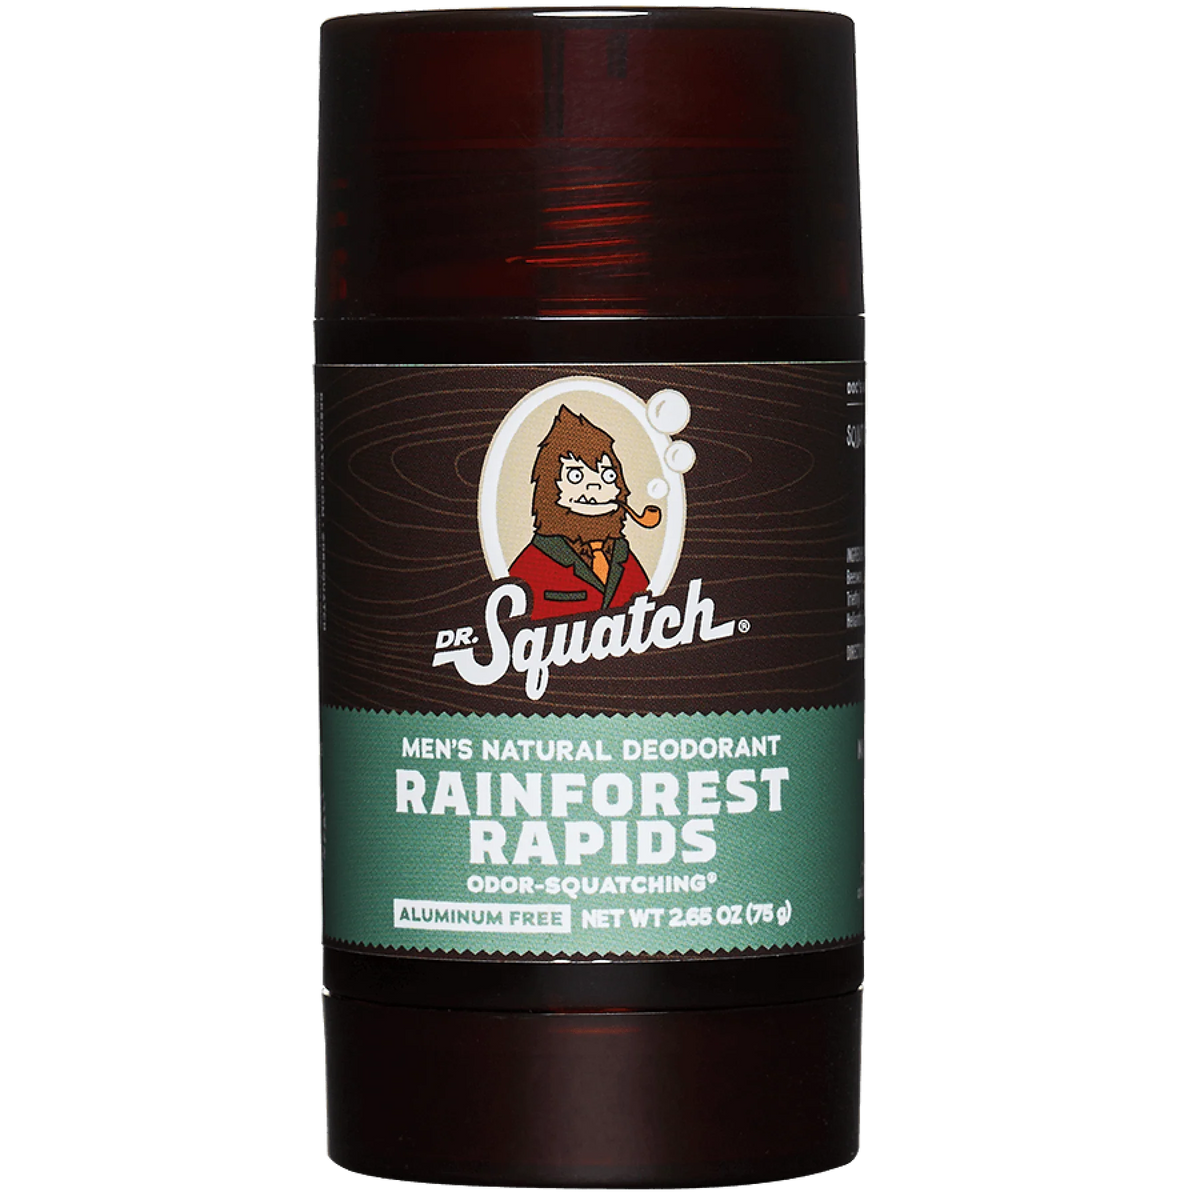 Men's Natural Deodorant - Rainforest Rapid